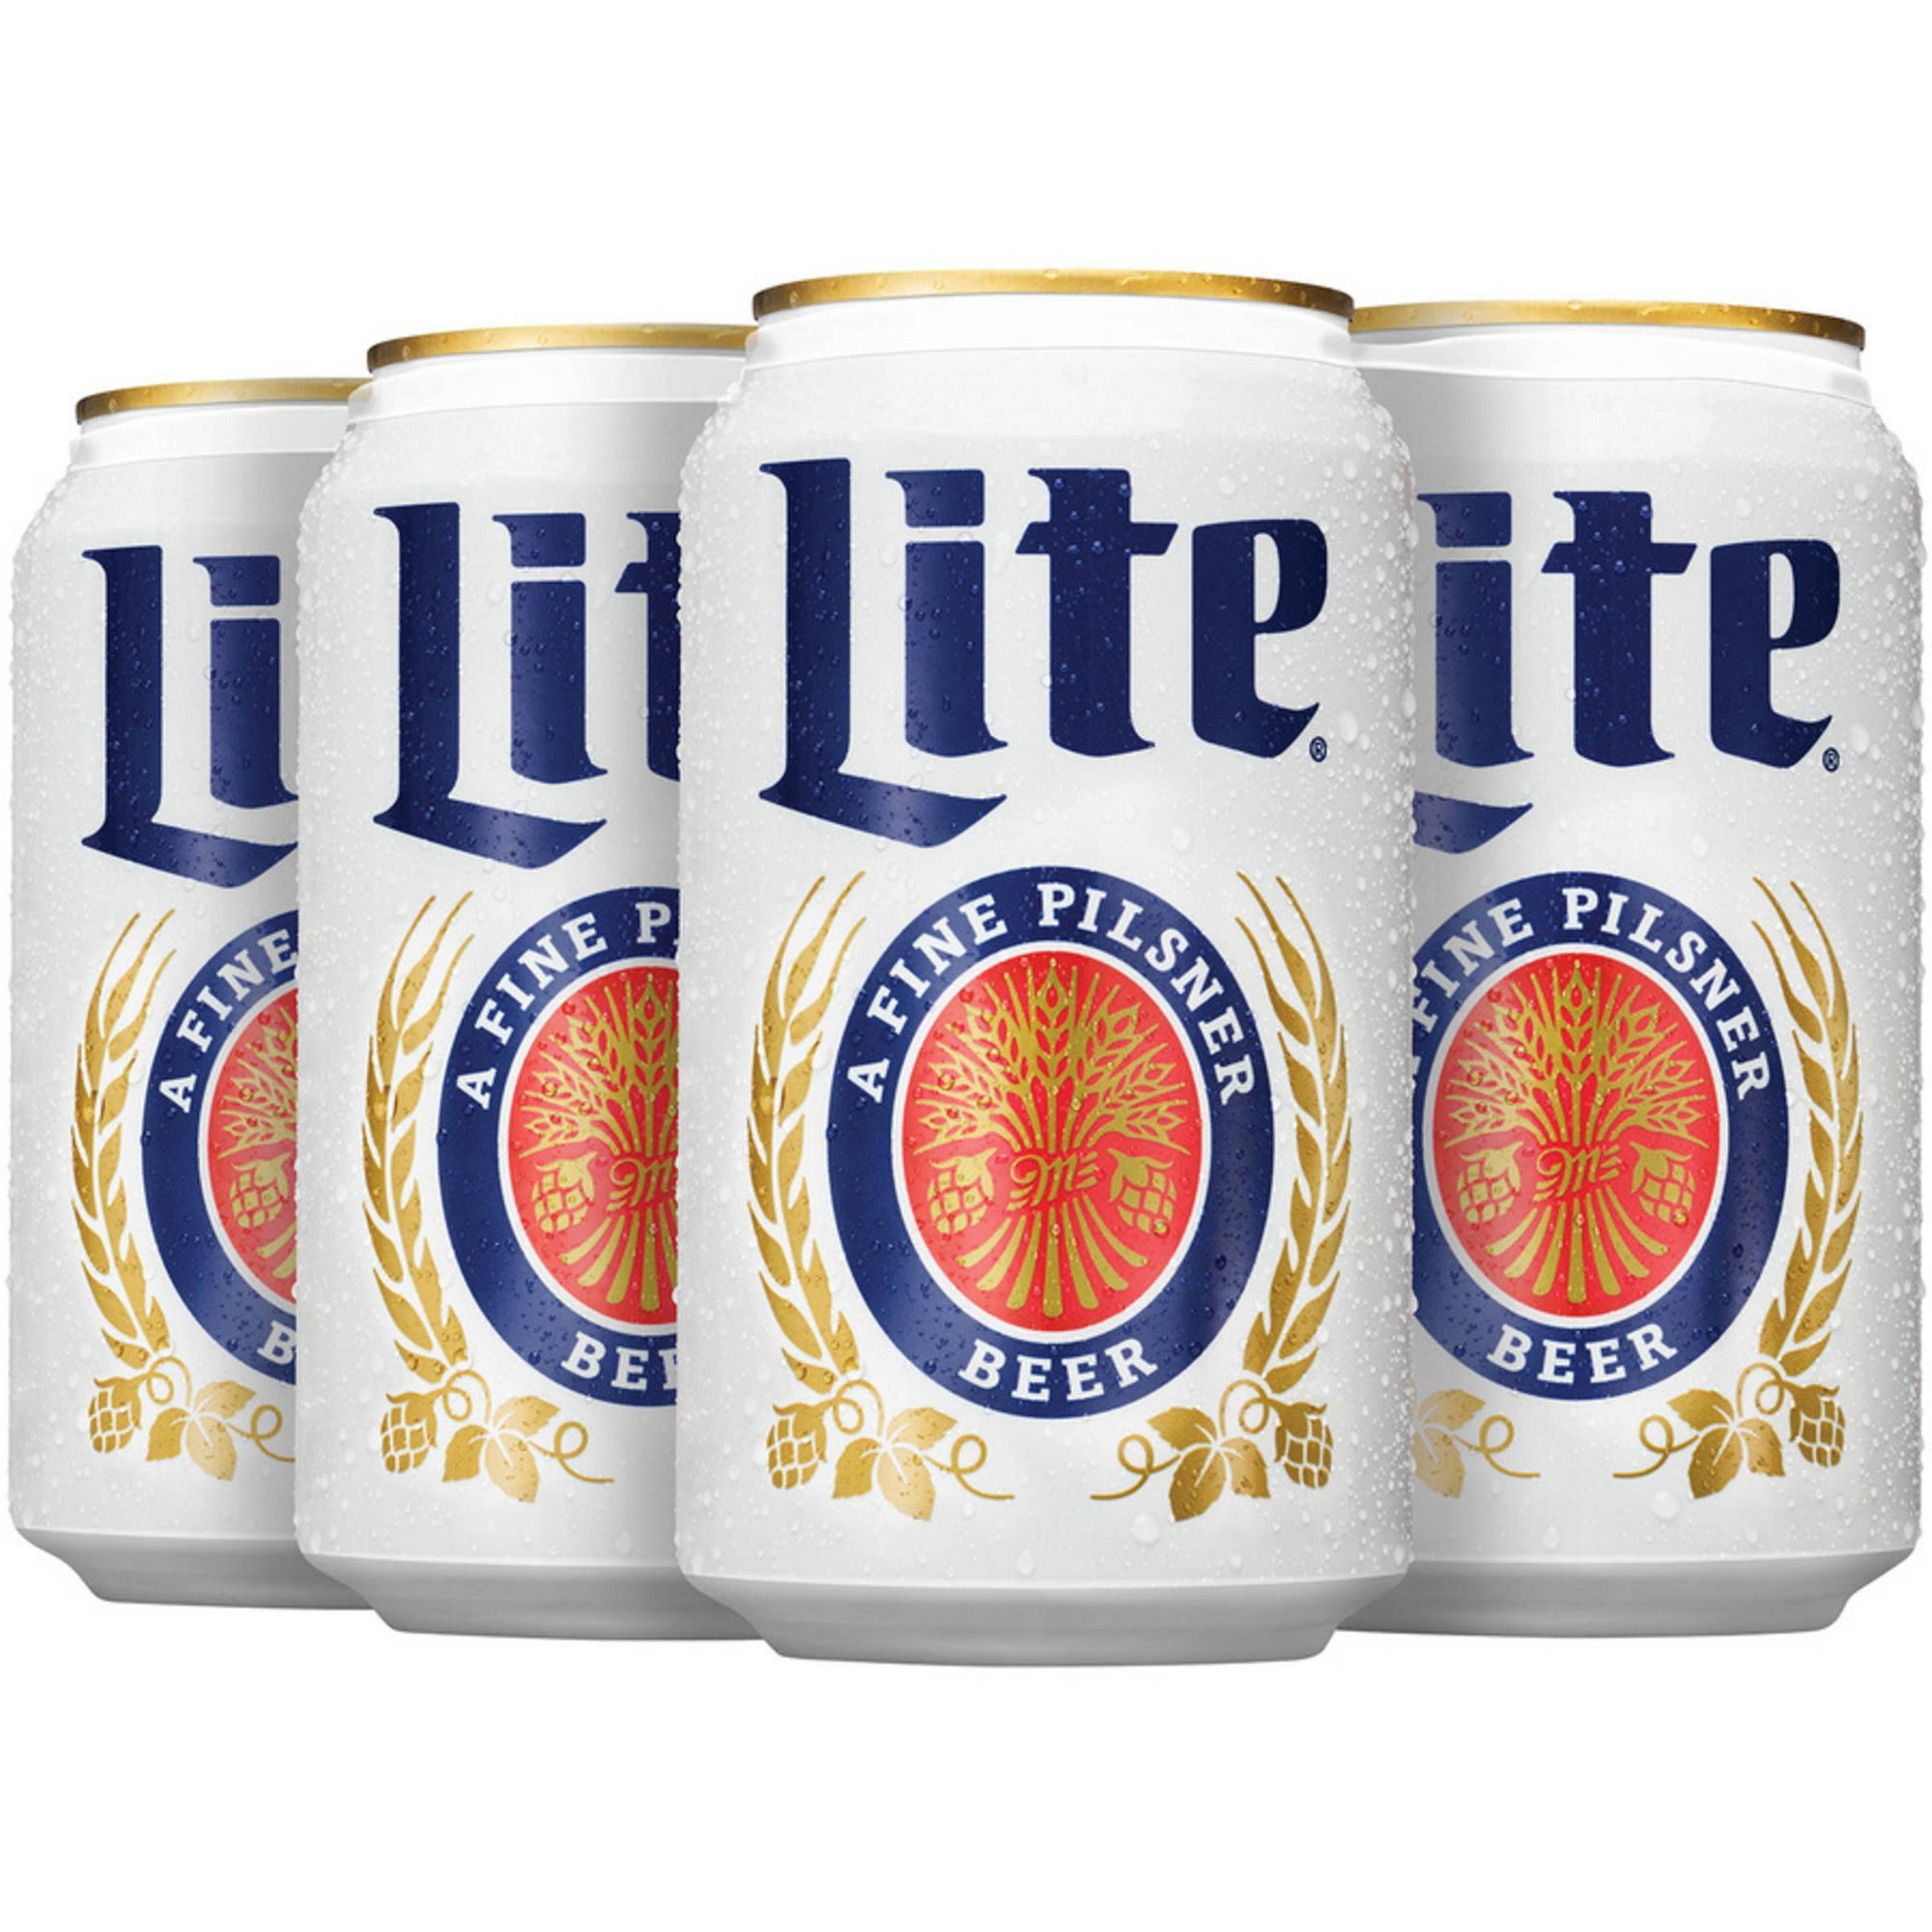 Miller Lite Pilsner Beer